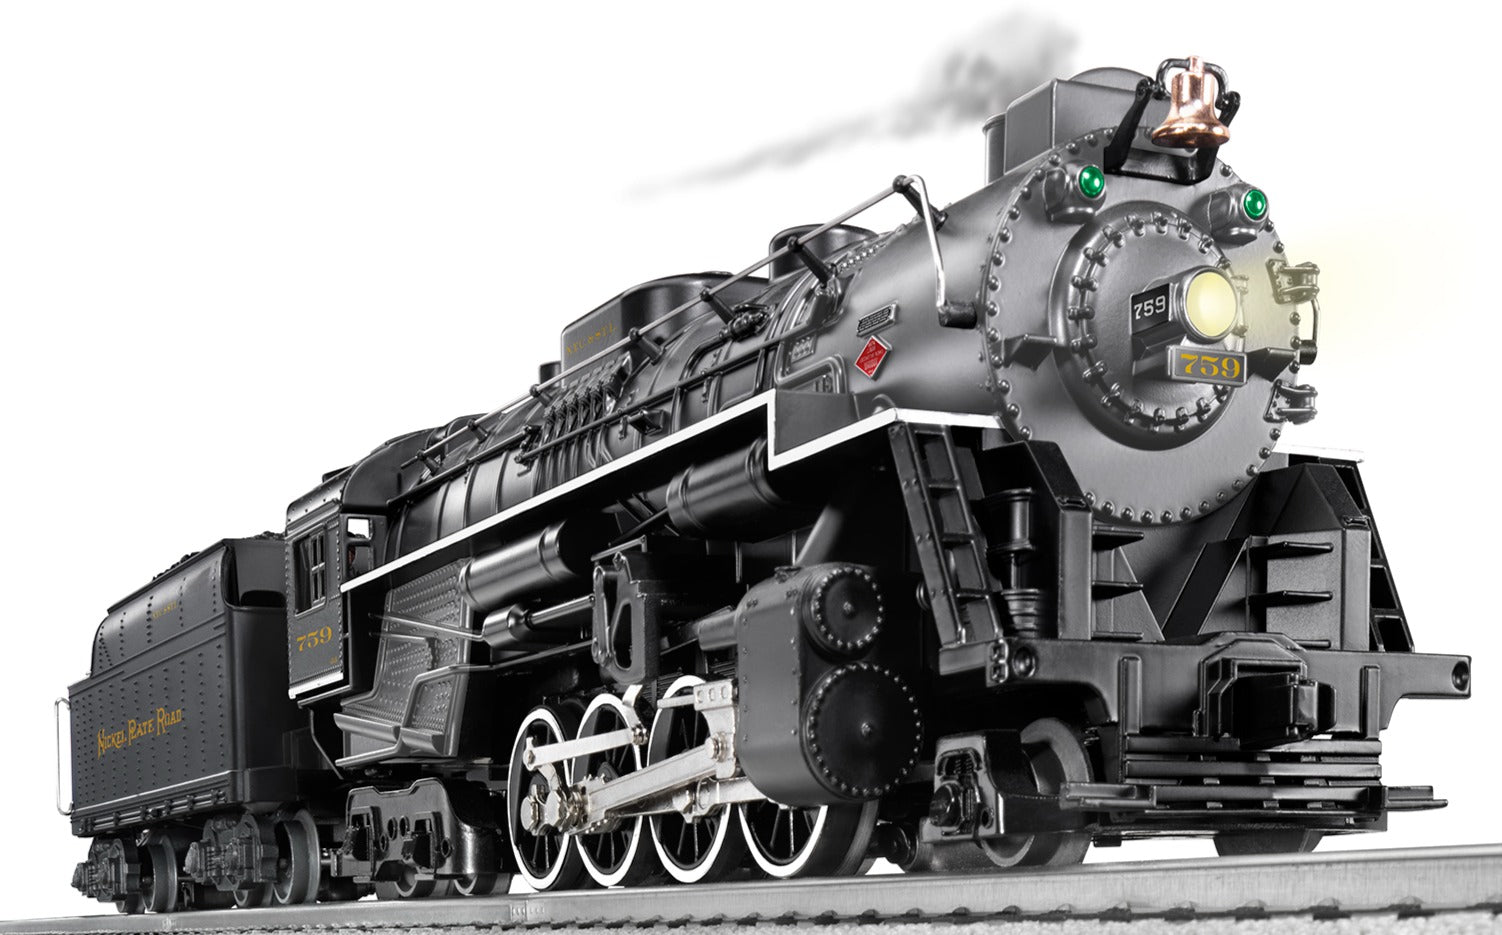 Lionel 2432070 - LionChief+ 2.0 Berkshire Steam Locomotive "Nickel Plate Road" #759